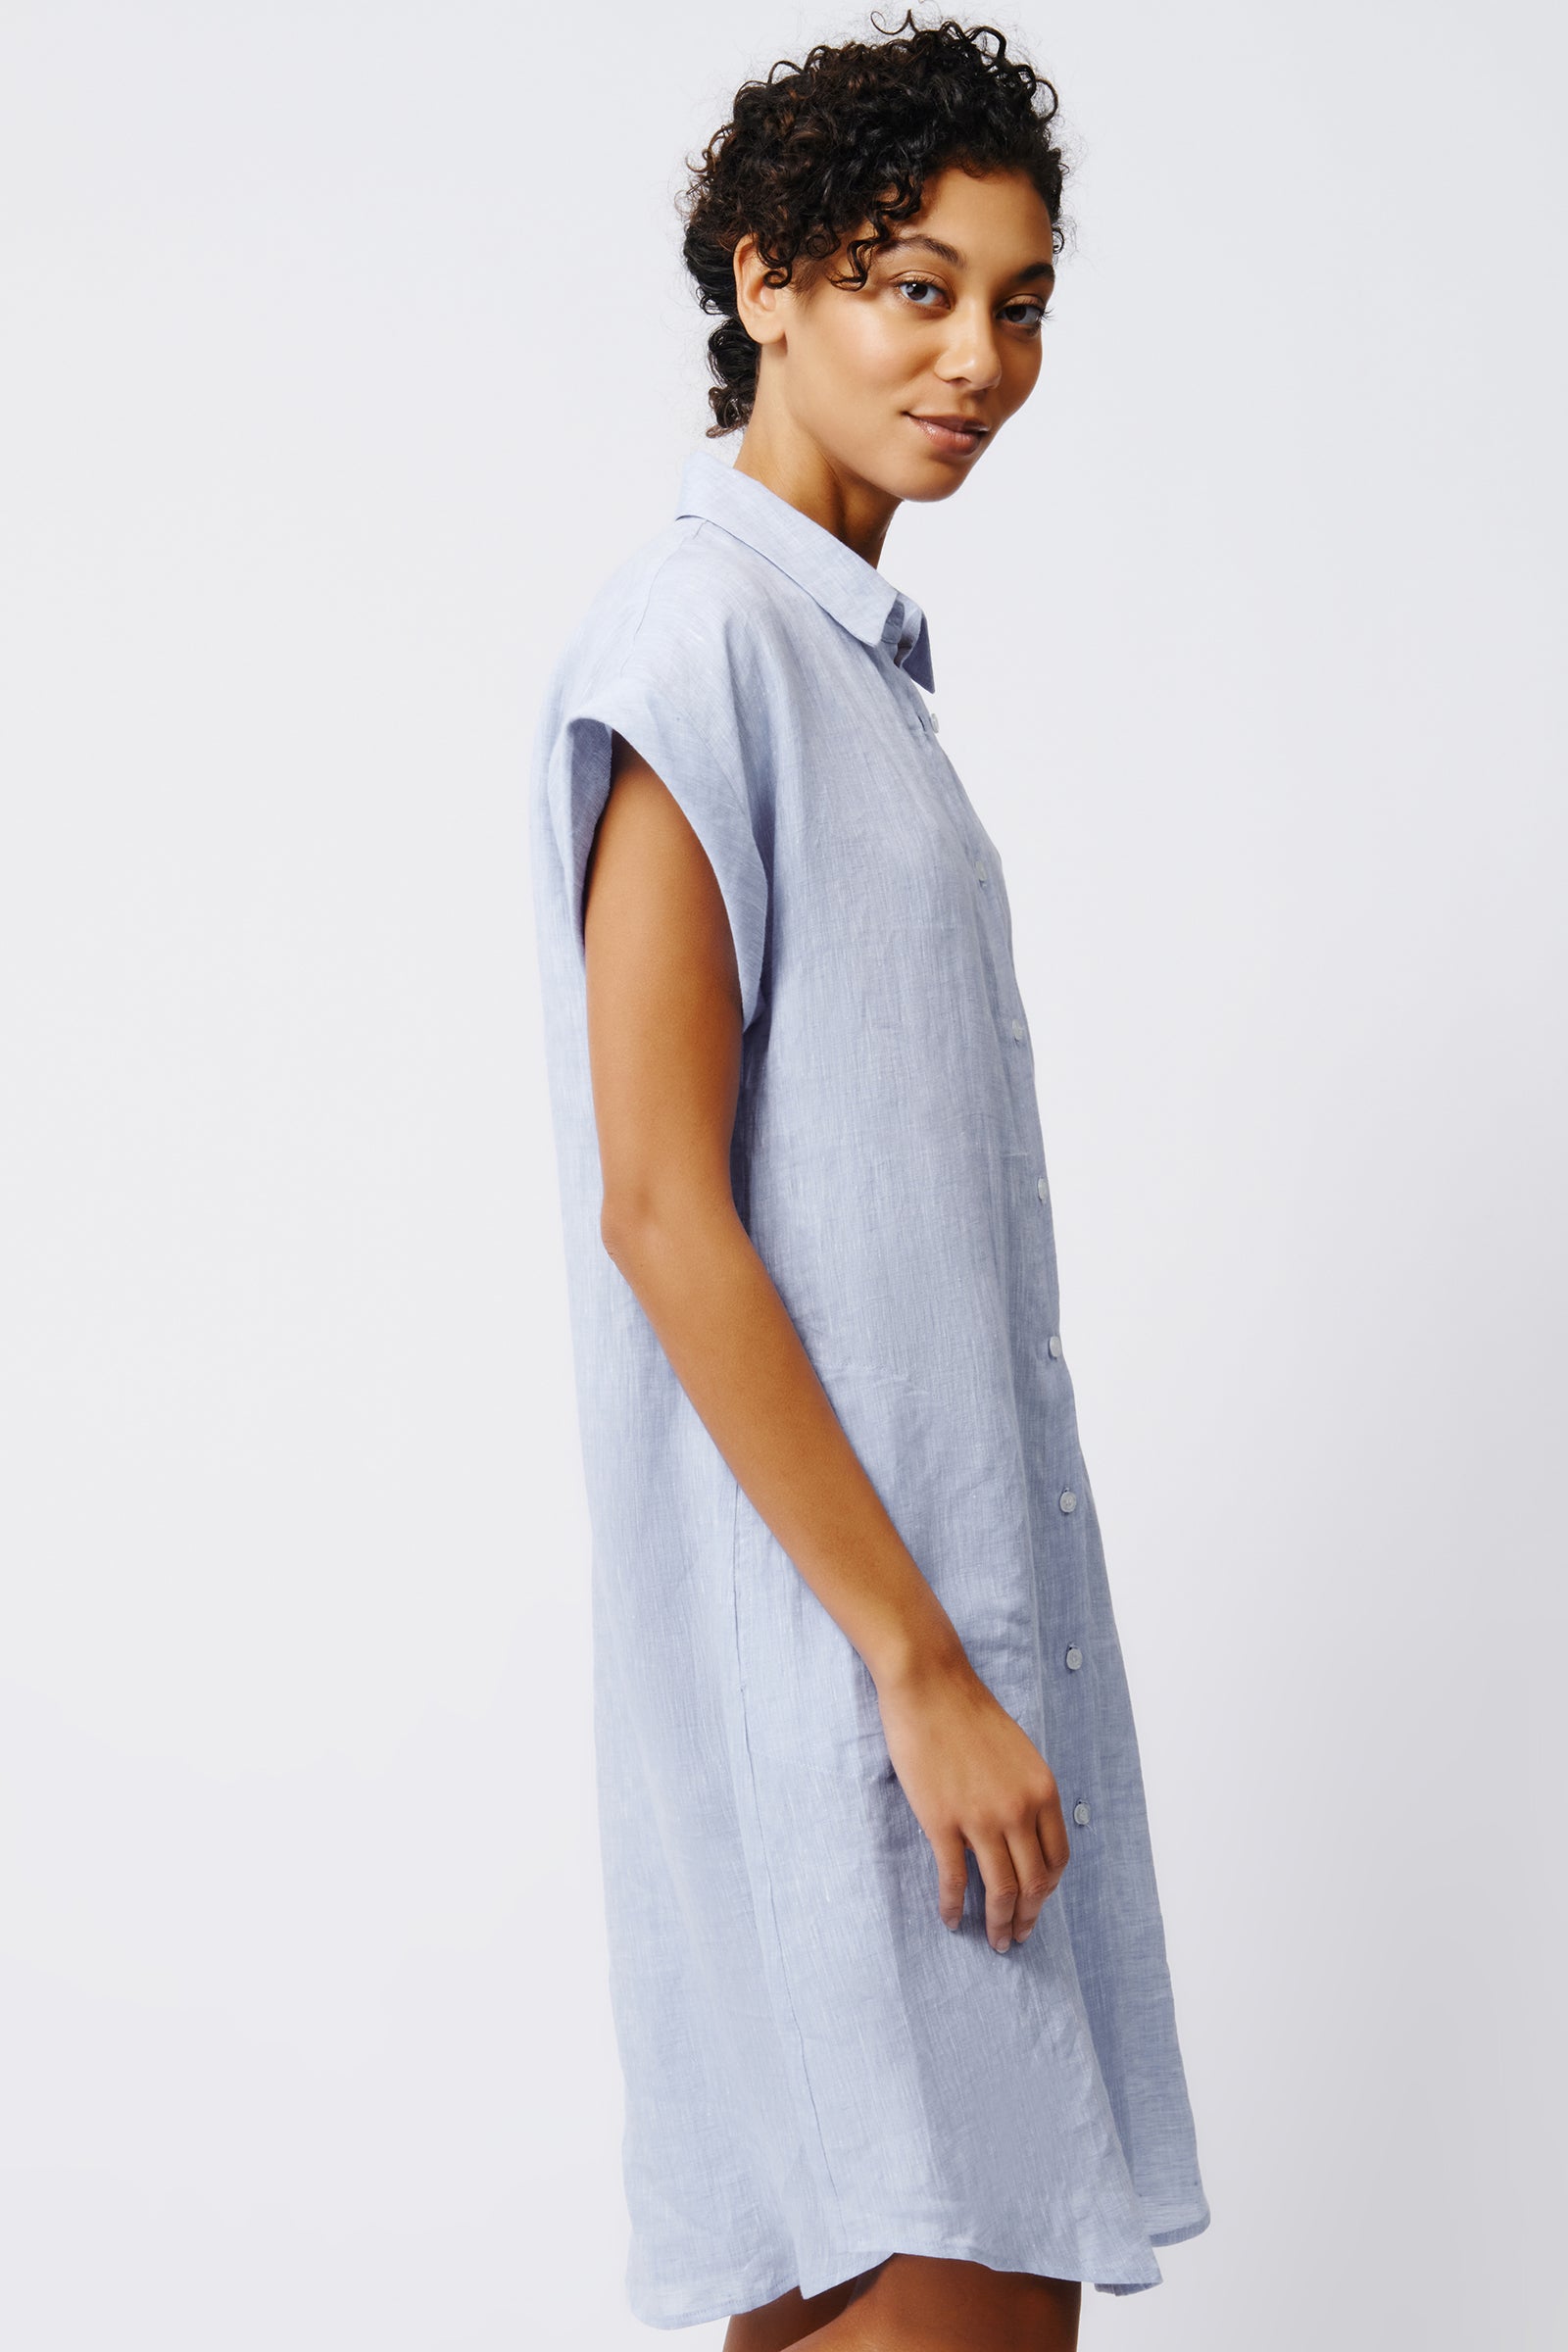 Kal Rieman Hedy Cuffed Cap Sleeve Shirt Dress in Blue Linen on Model Side View Crop 2